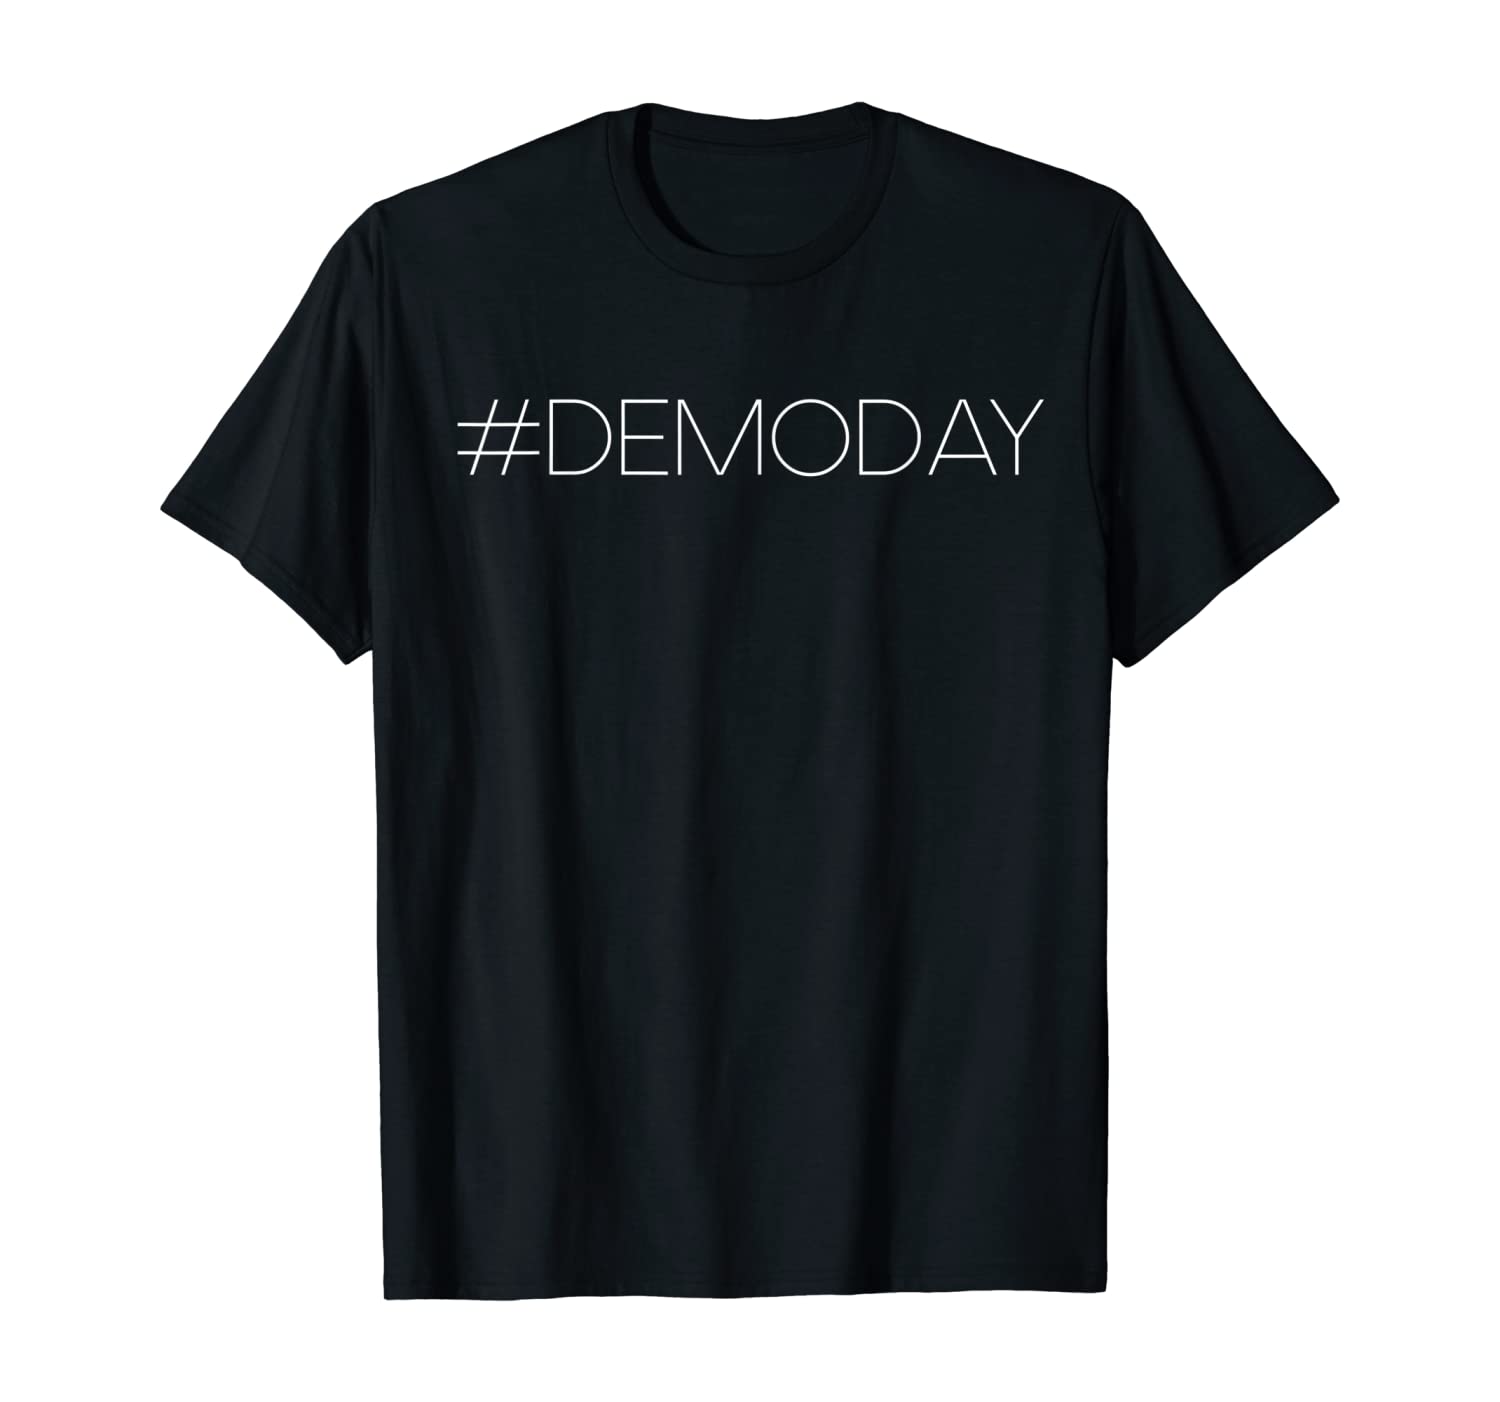 Demo Day T Shirt Australia Shirt Australia